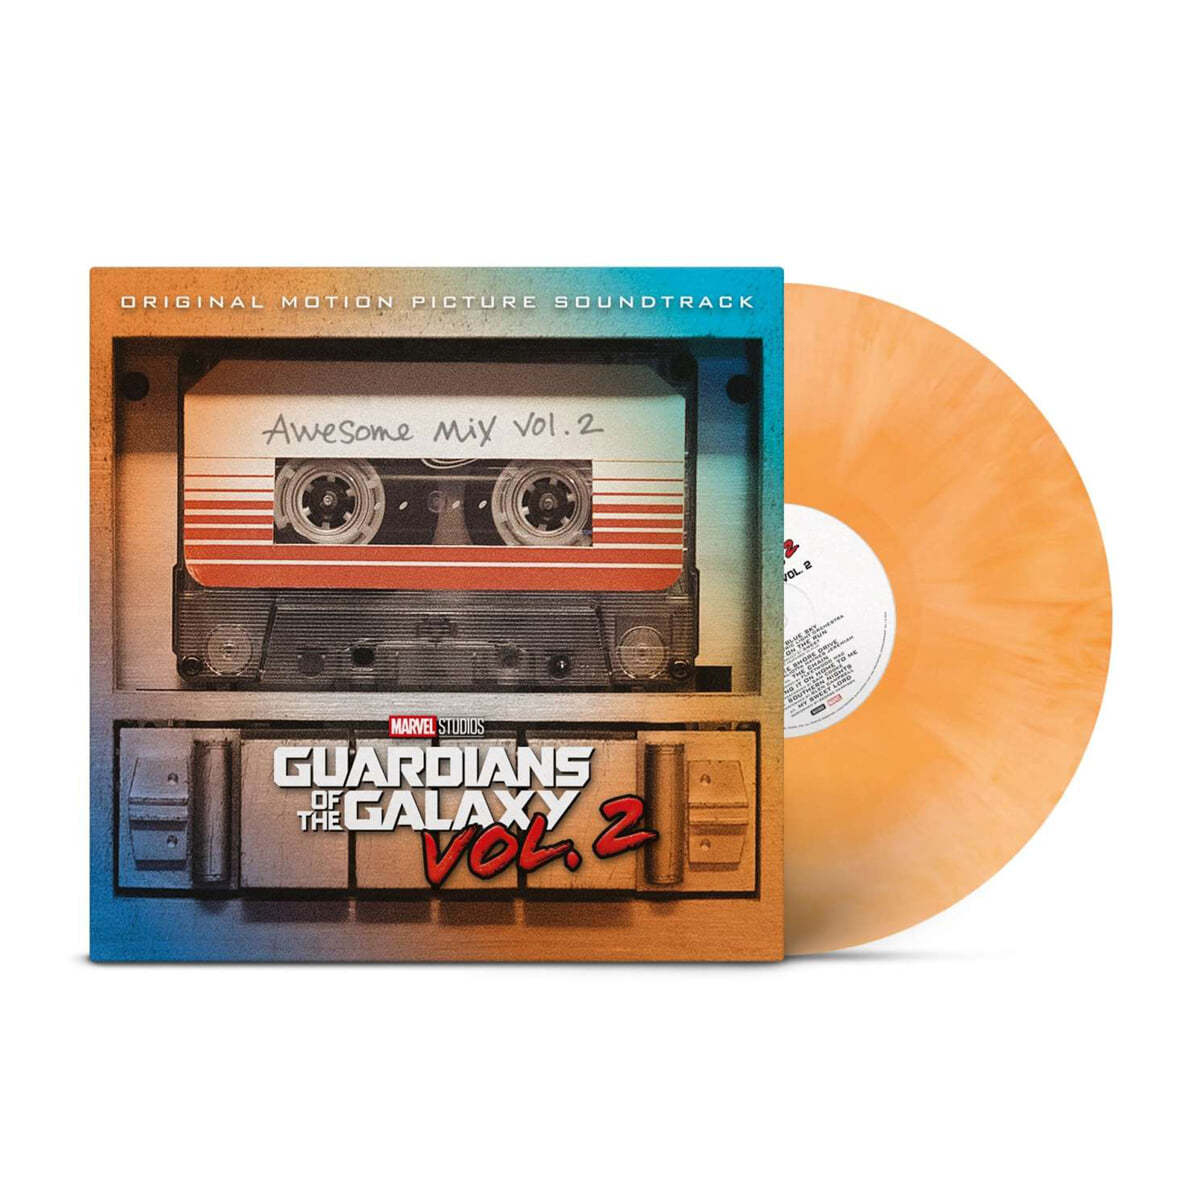 예약판매[PRE-ORDER] 가디언즈 오브 갤럭시 2 영화음악 (Guardians Of The Galaxy Vol. 2: Awesome Mix Vol. 2 OST) [컬러 LP]